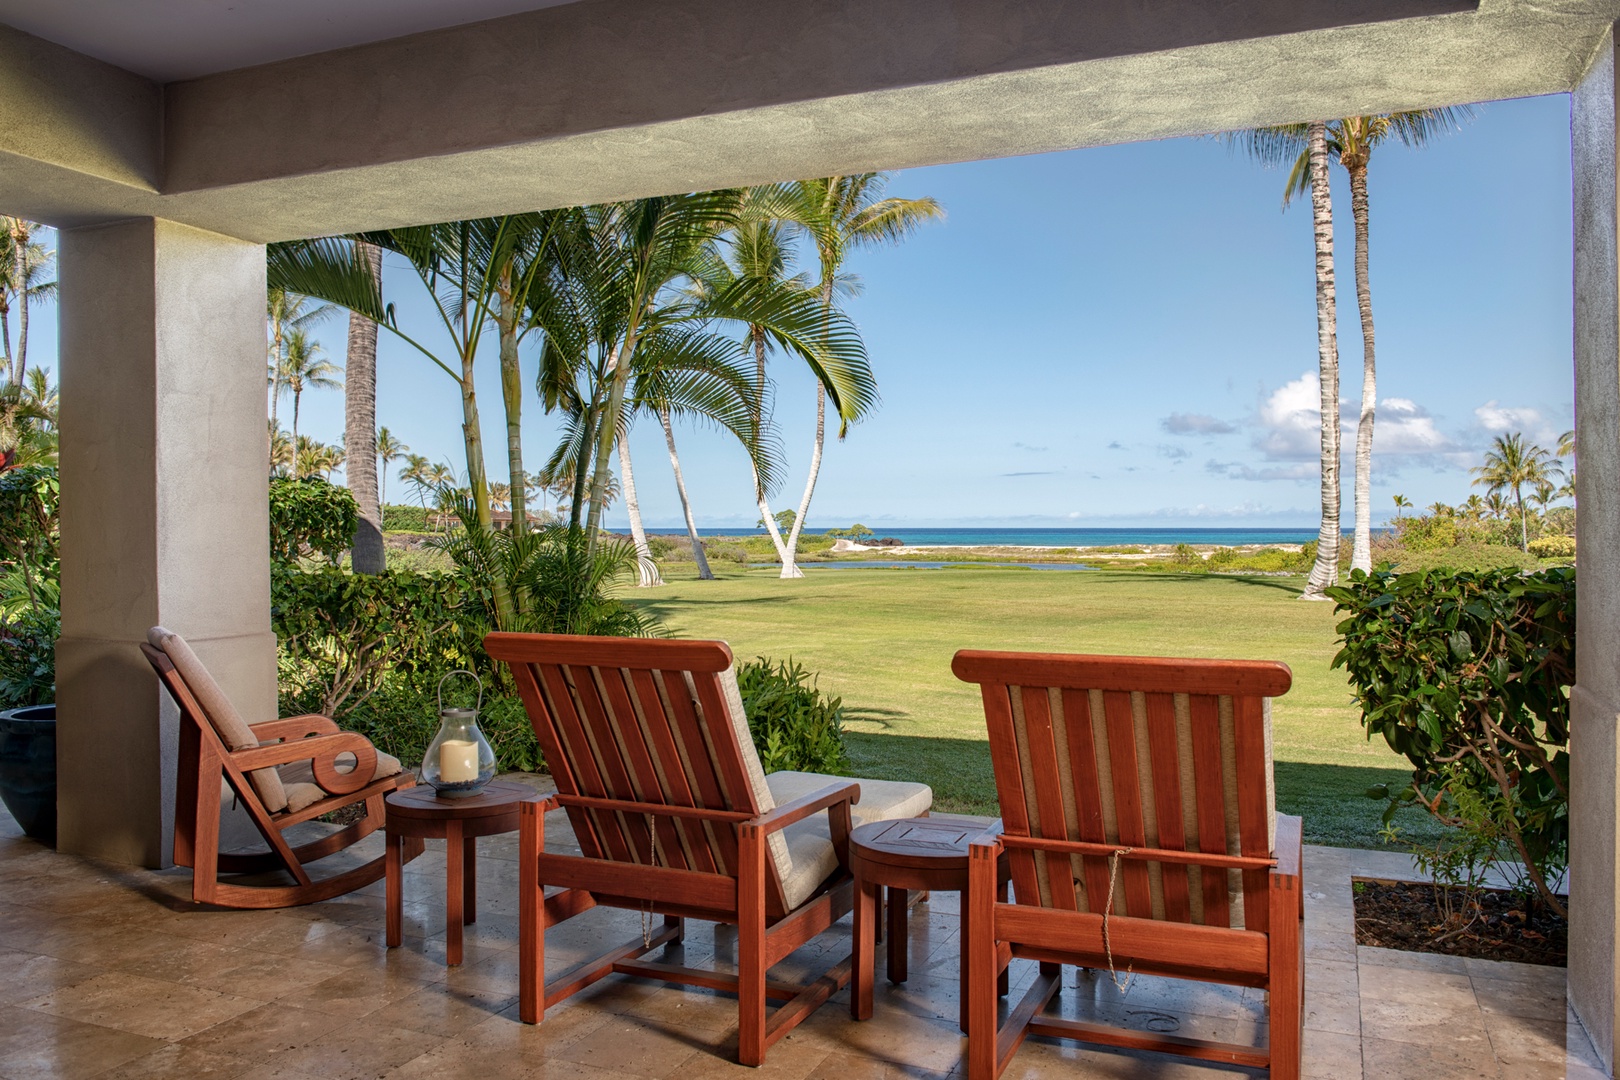 Kailua Kona Vacation Rentals, 3BD Golf Villa (3101) at Four Seasons Resort at Hualalai - Closer view of lanai loungers with ocean views.